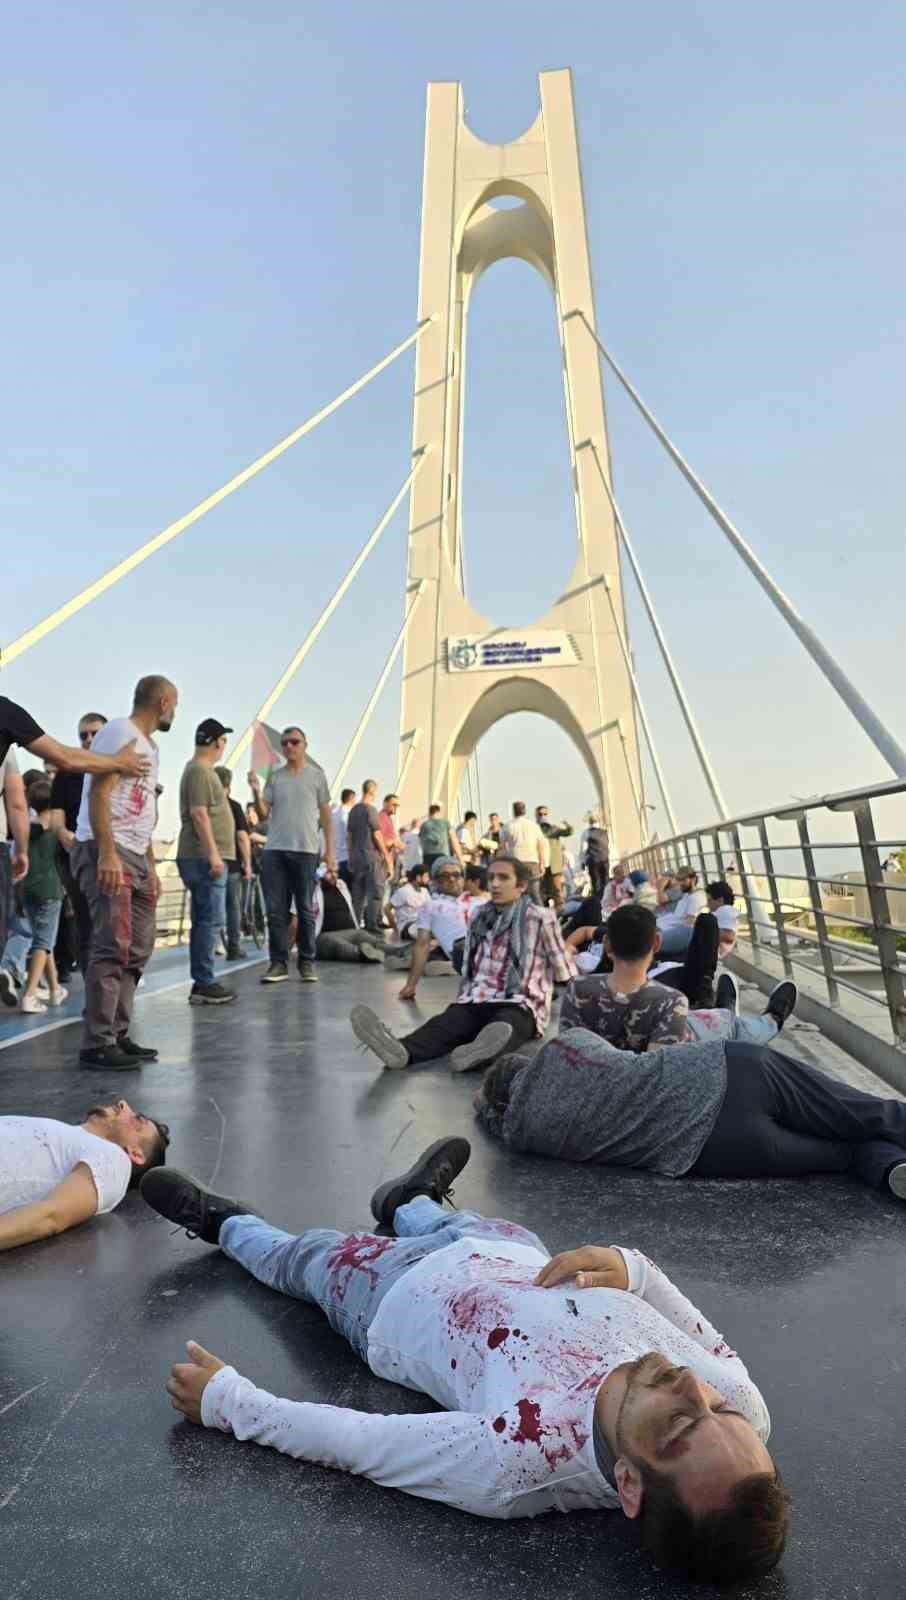 Köprüye çıkan yüzlerce kişi kırmızı boya sürüp Filistin’deki ölümlere tepki gösterdi